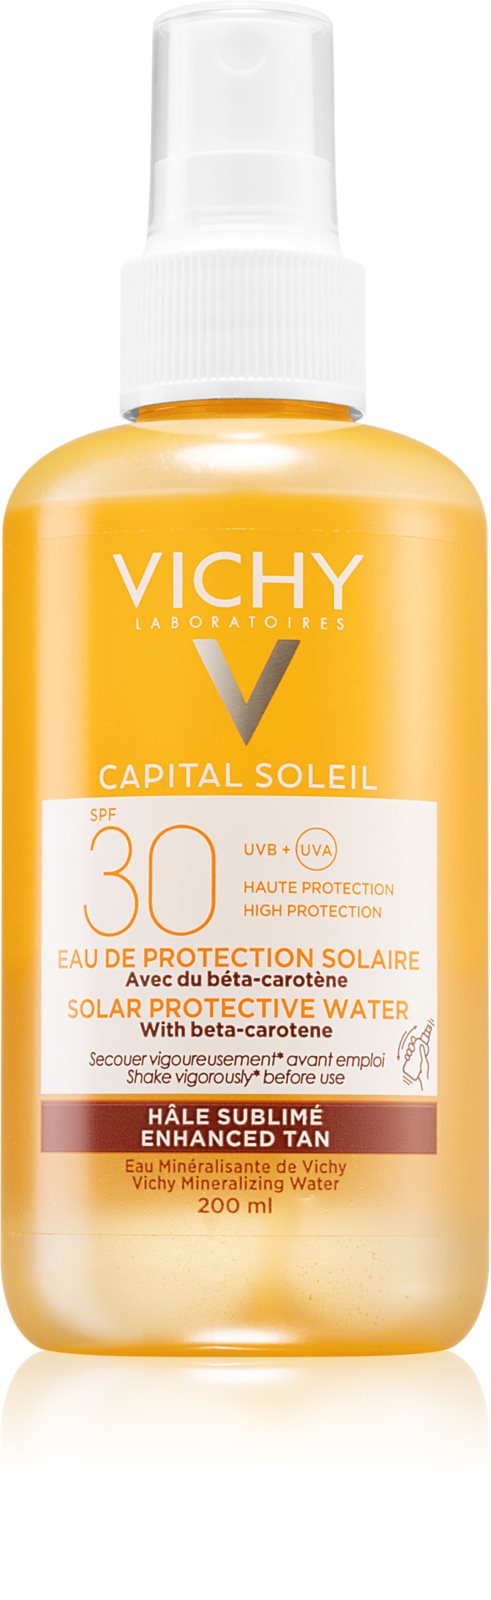 vichy-capital-soleil-vedo-spray-beta-karotinnal-spf-30_5.jpg